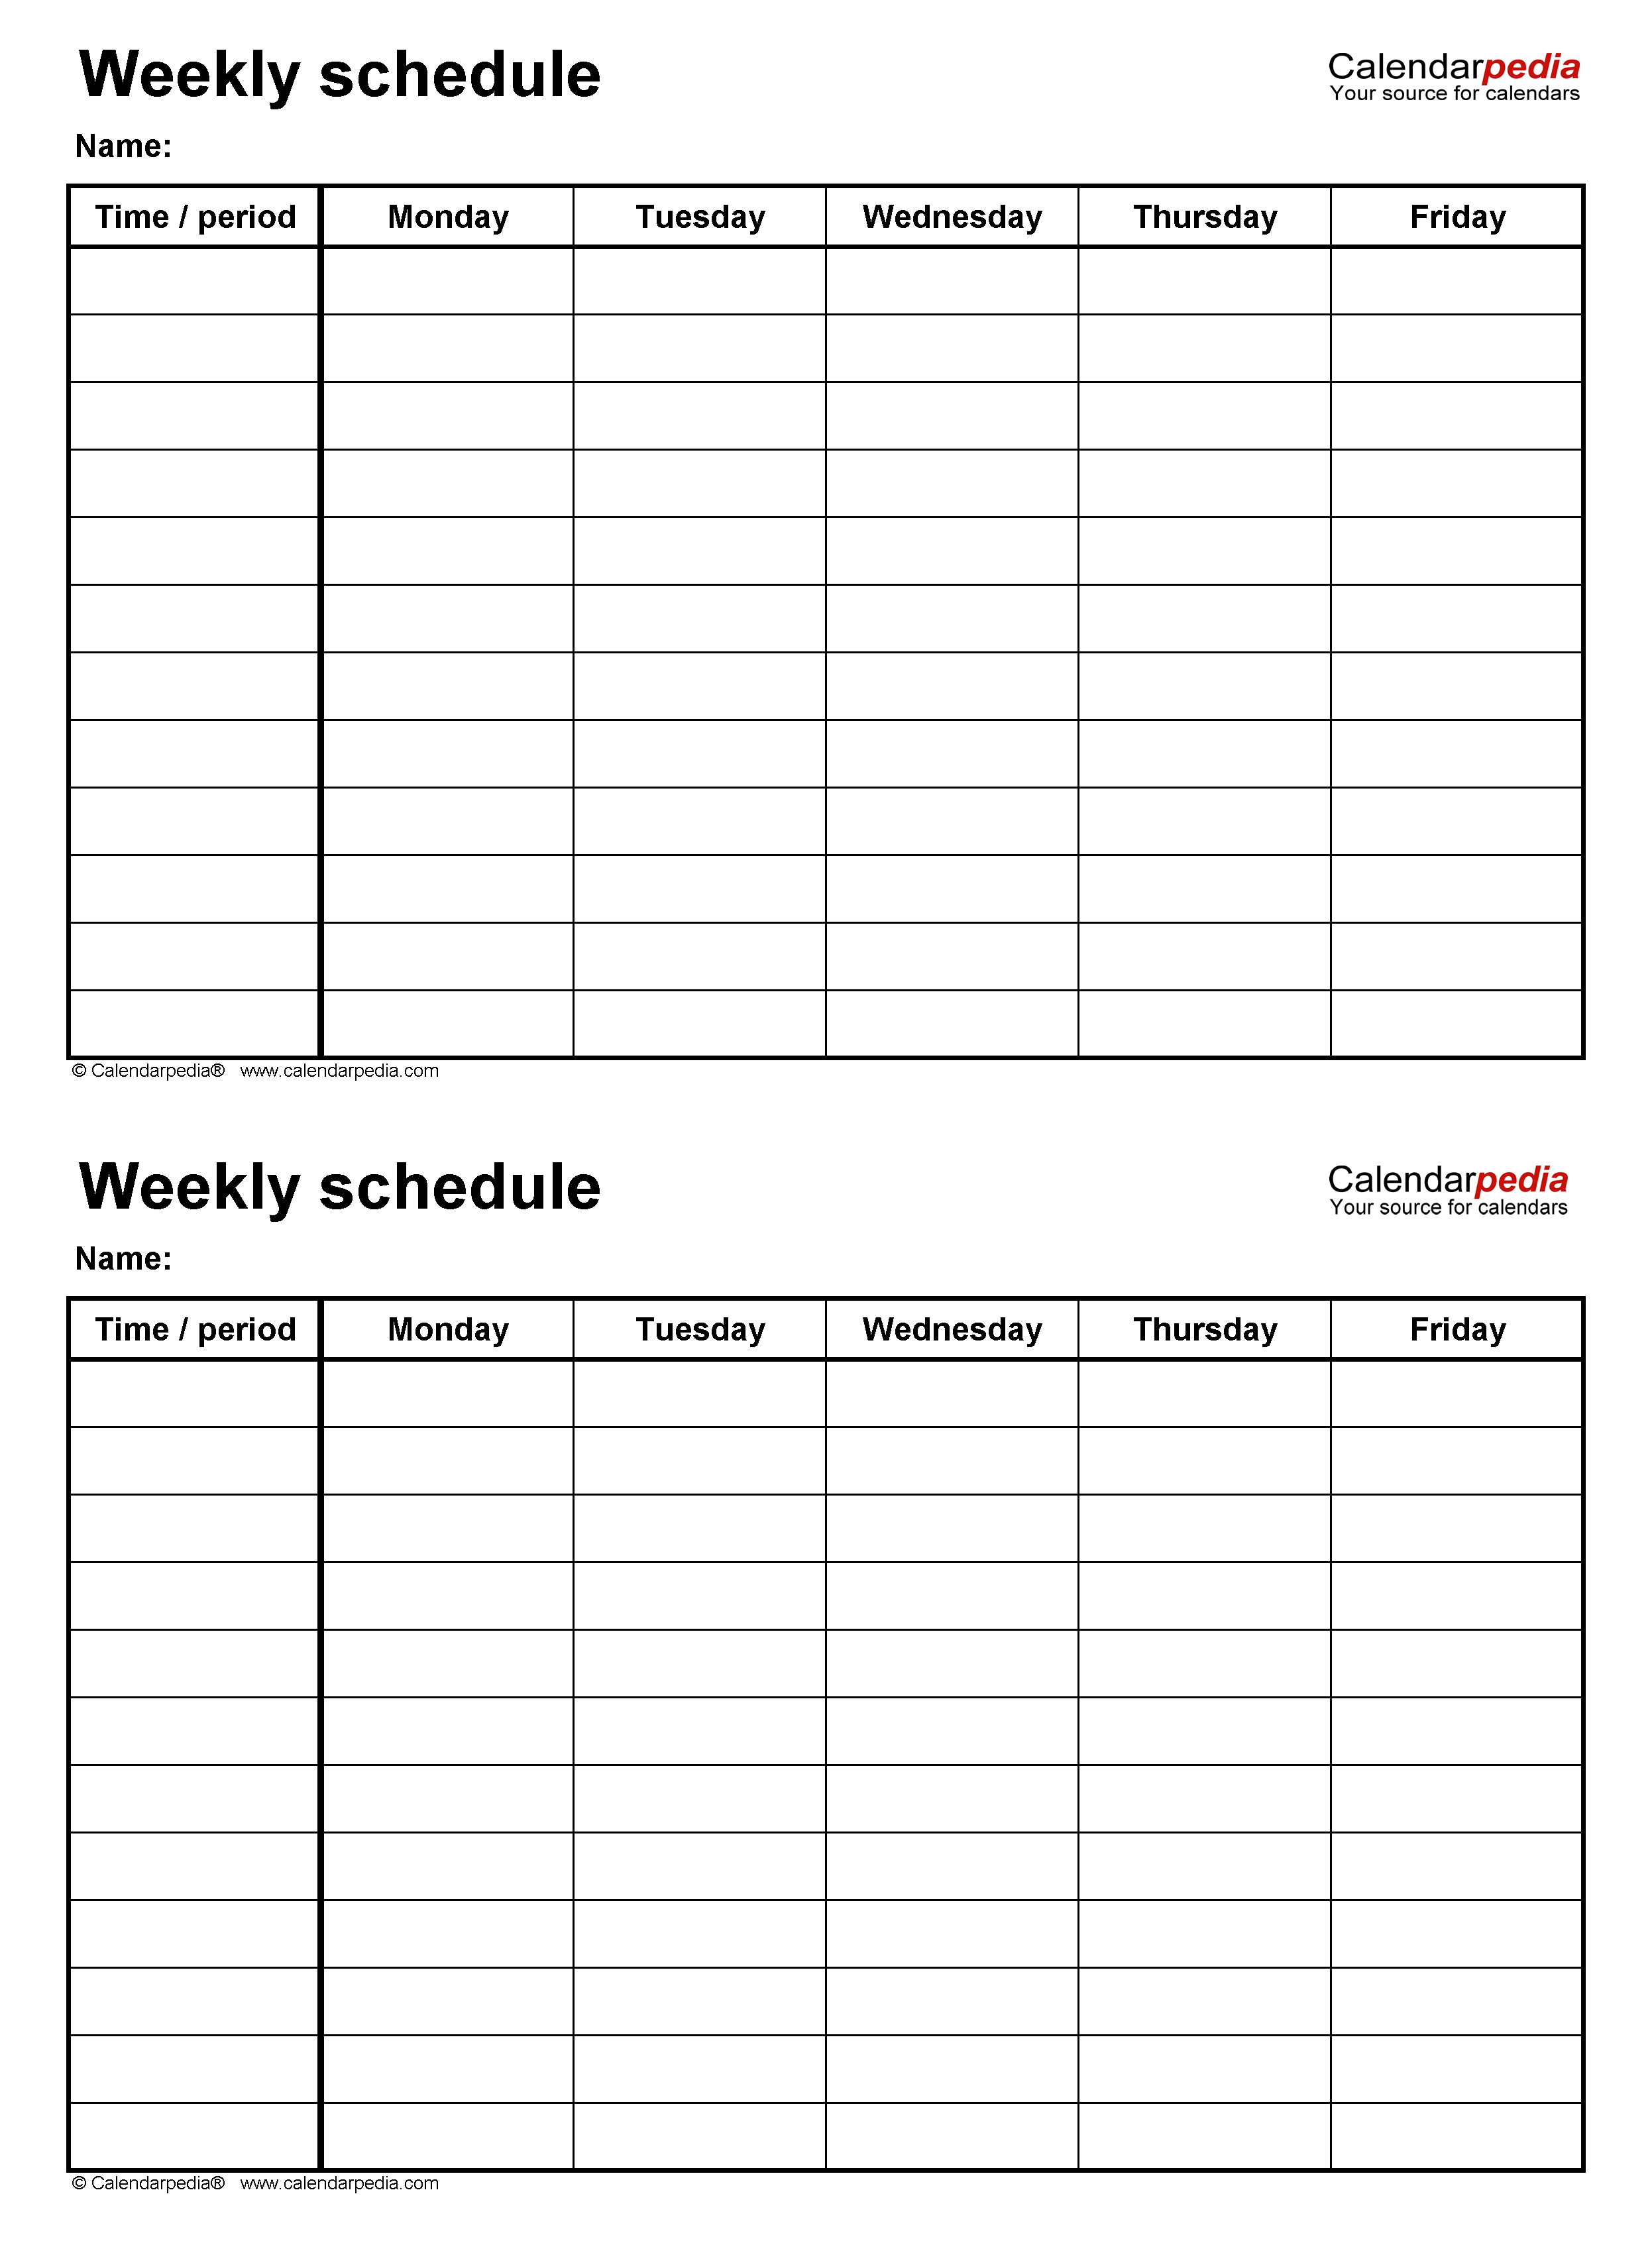 Editable PDF Weekly Schedule Template